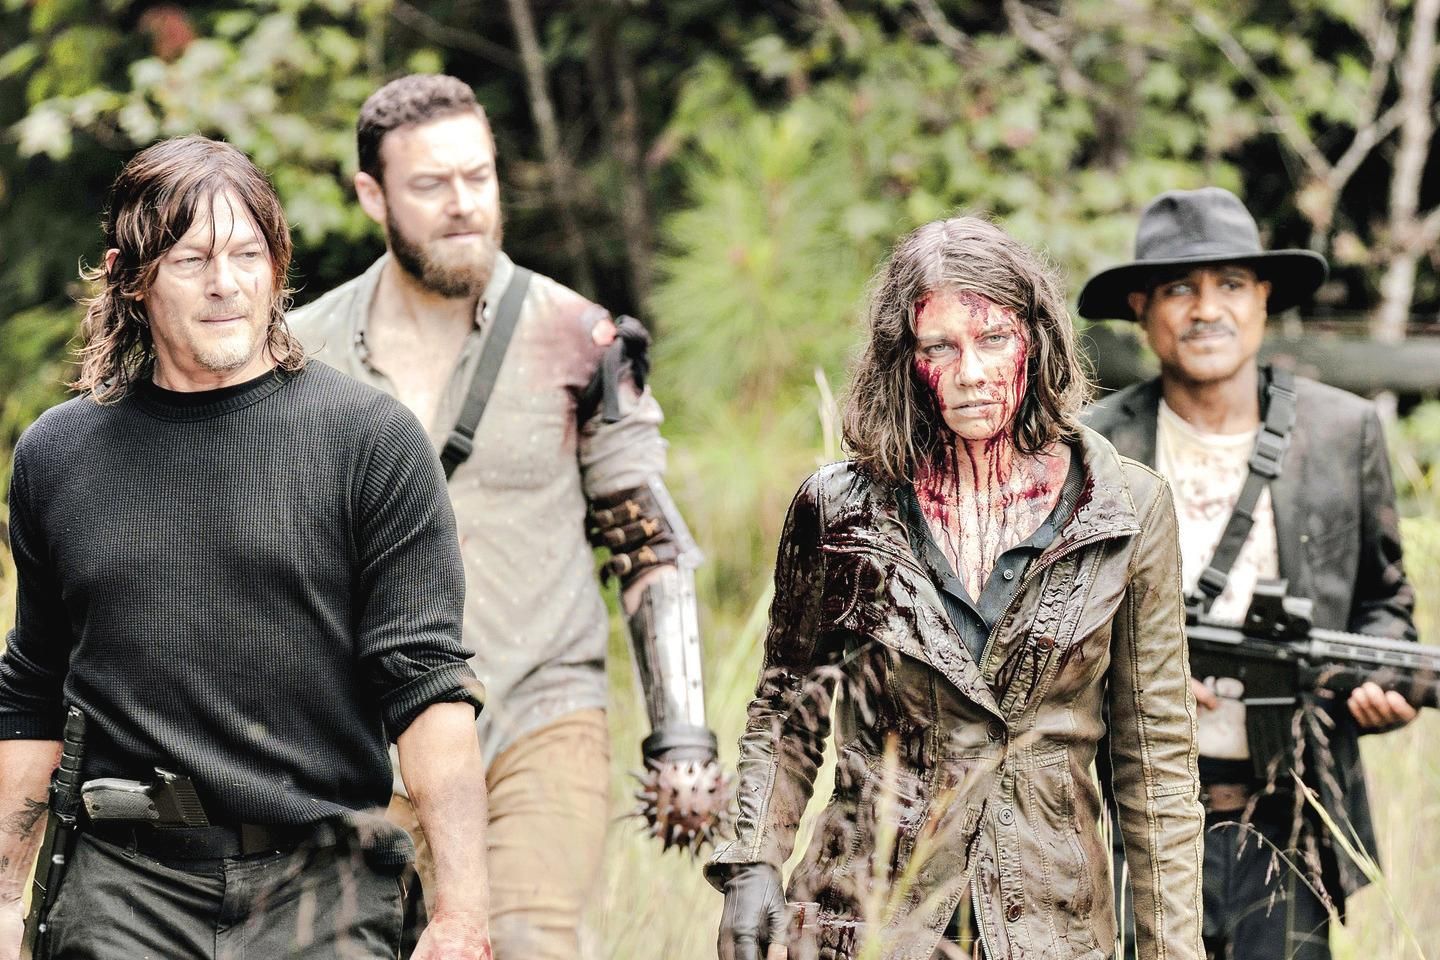 Fear The Walking Dead” fortalece história paralela à série original